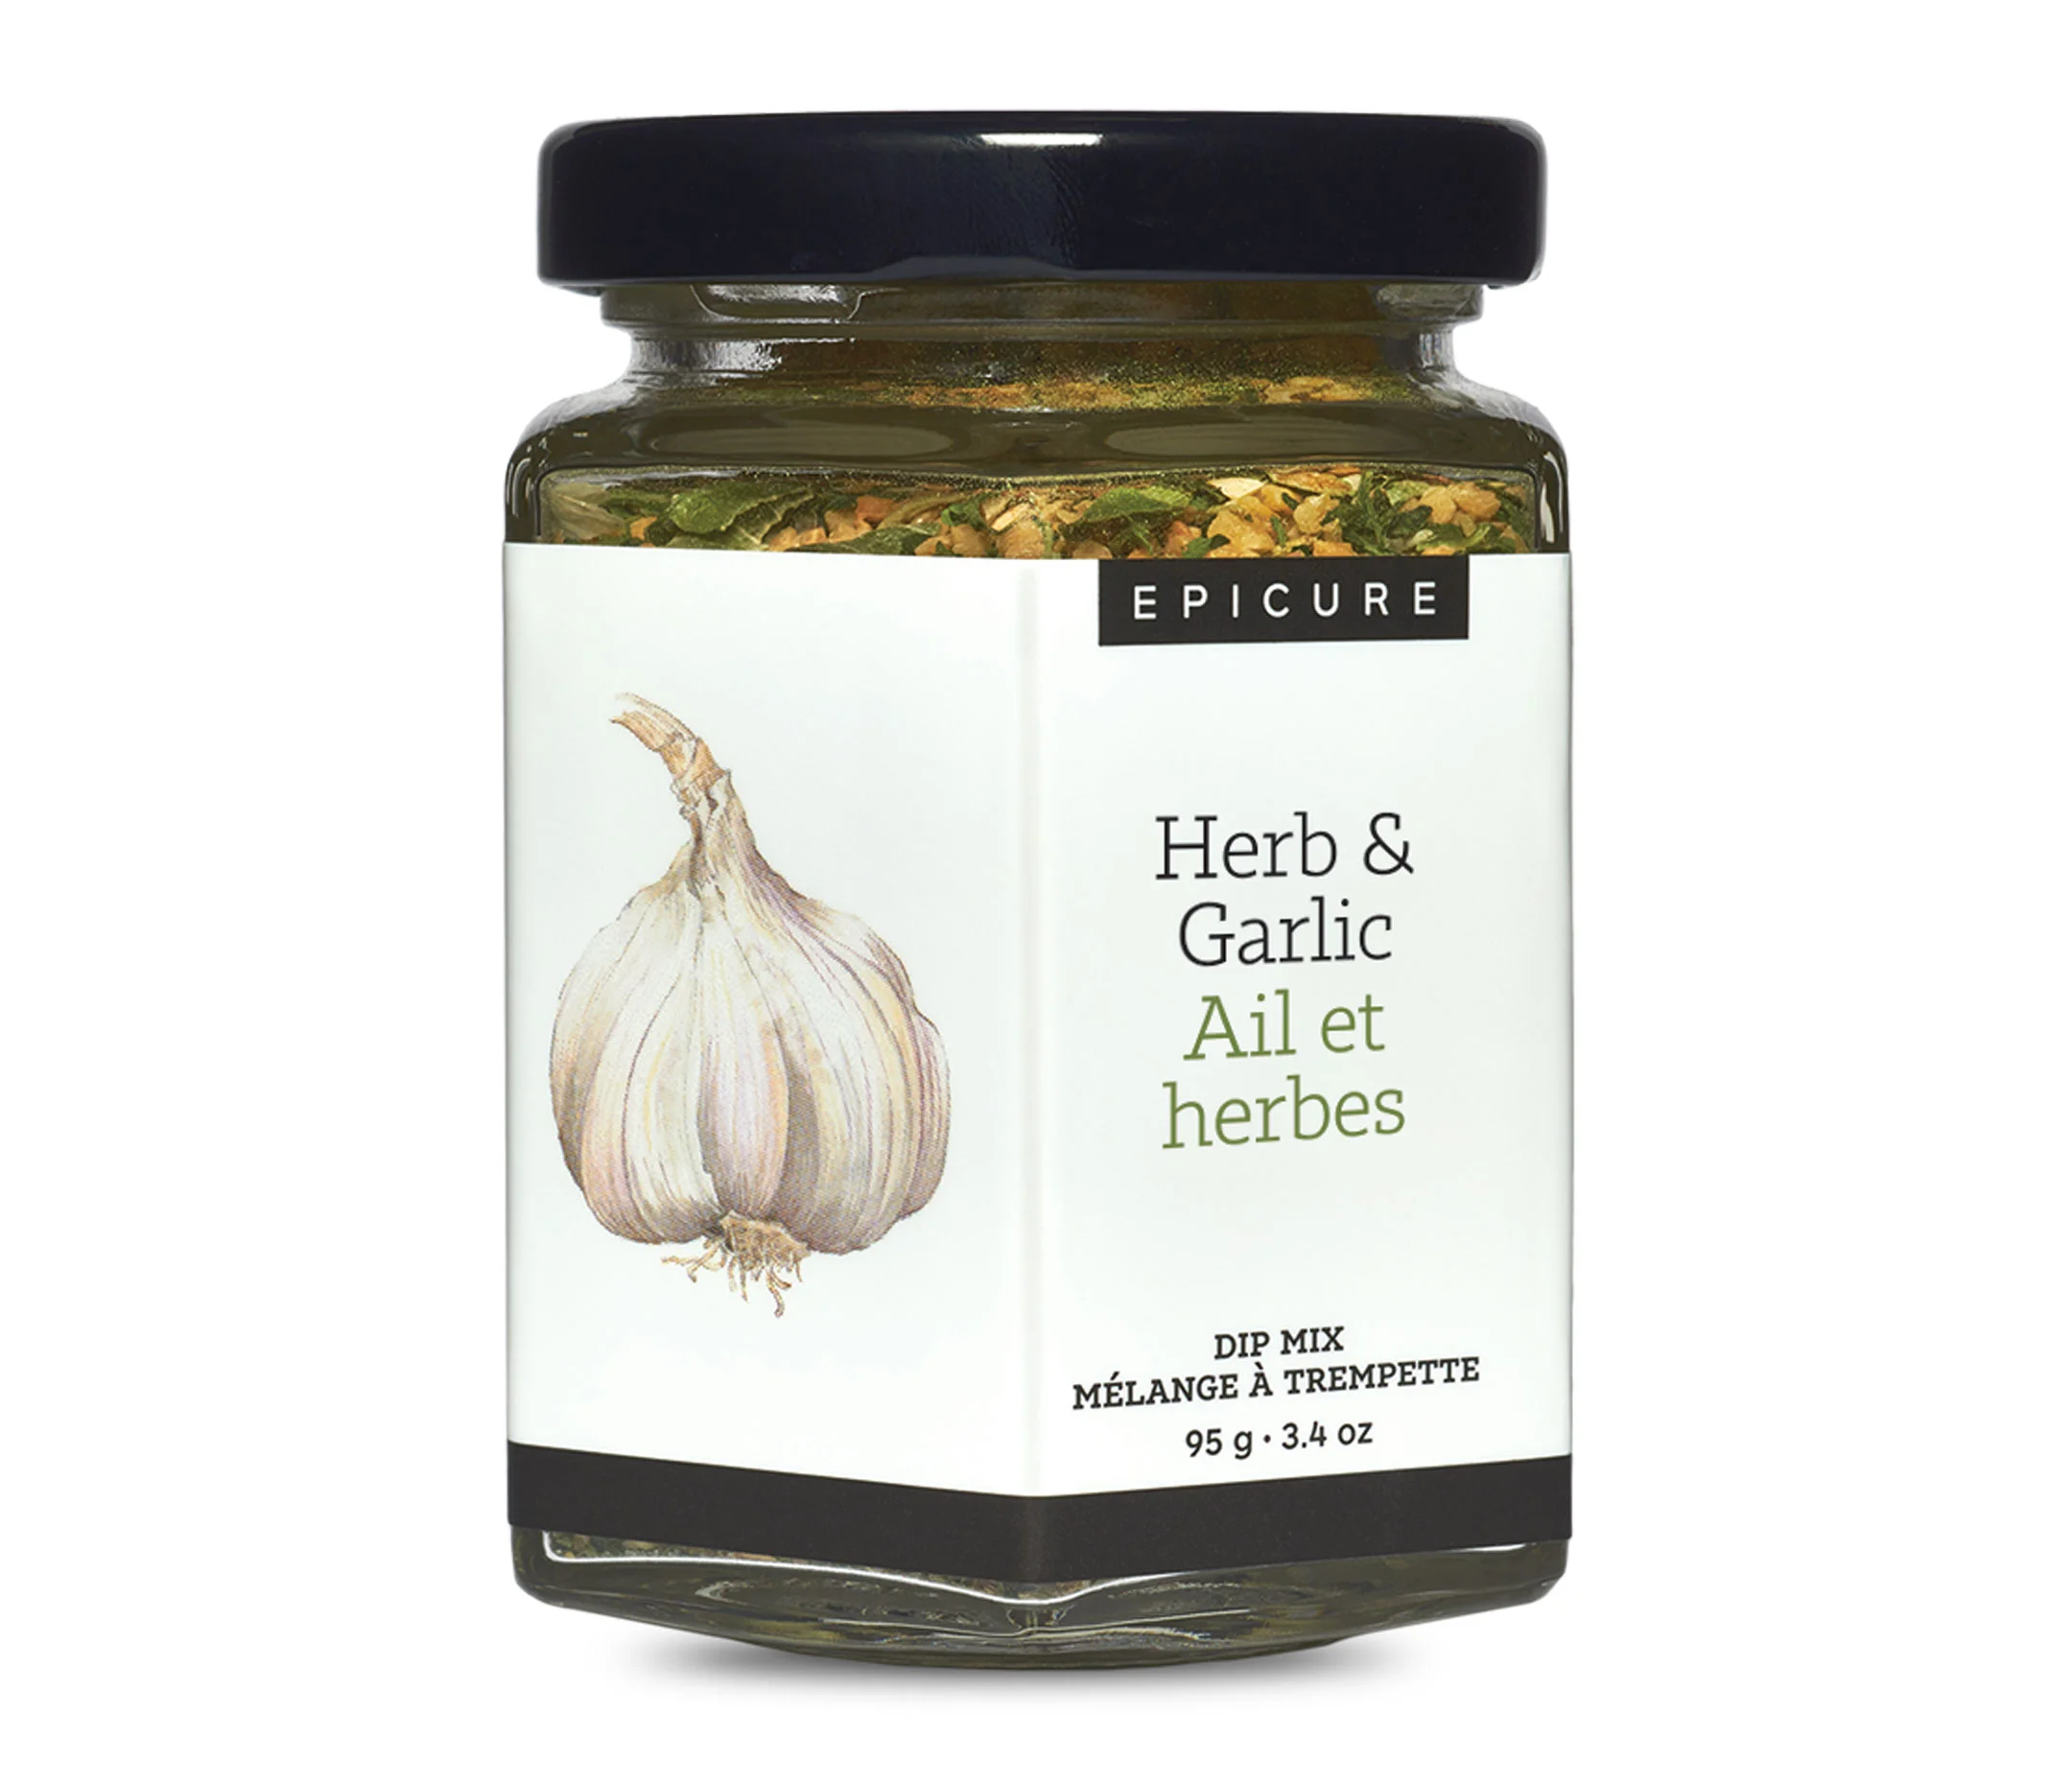 Herb & Garlic Dip Mix